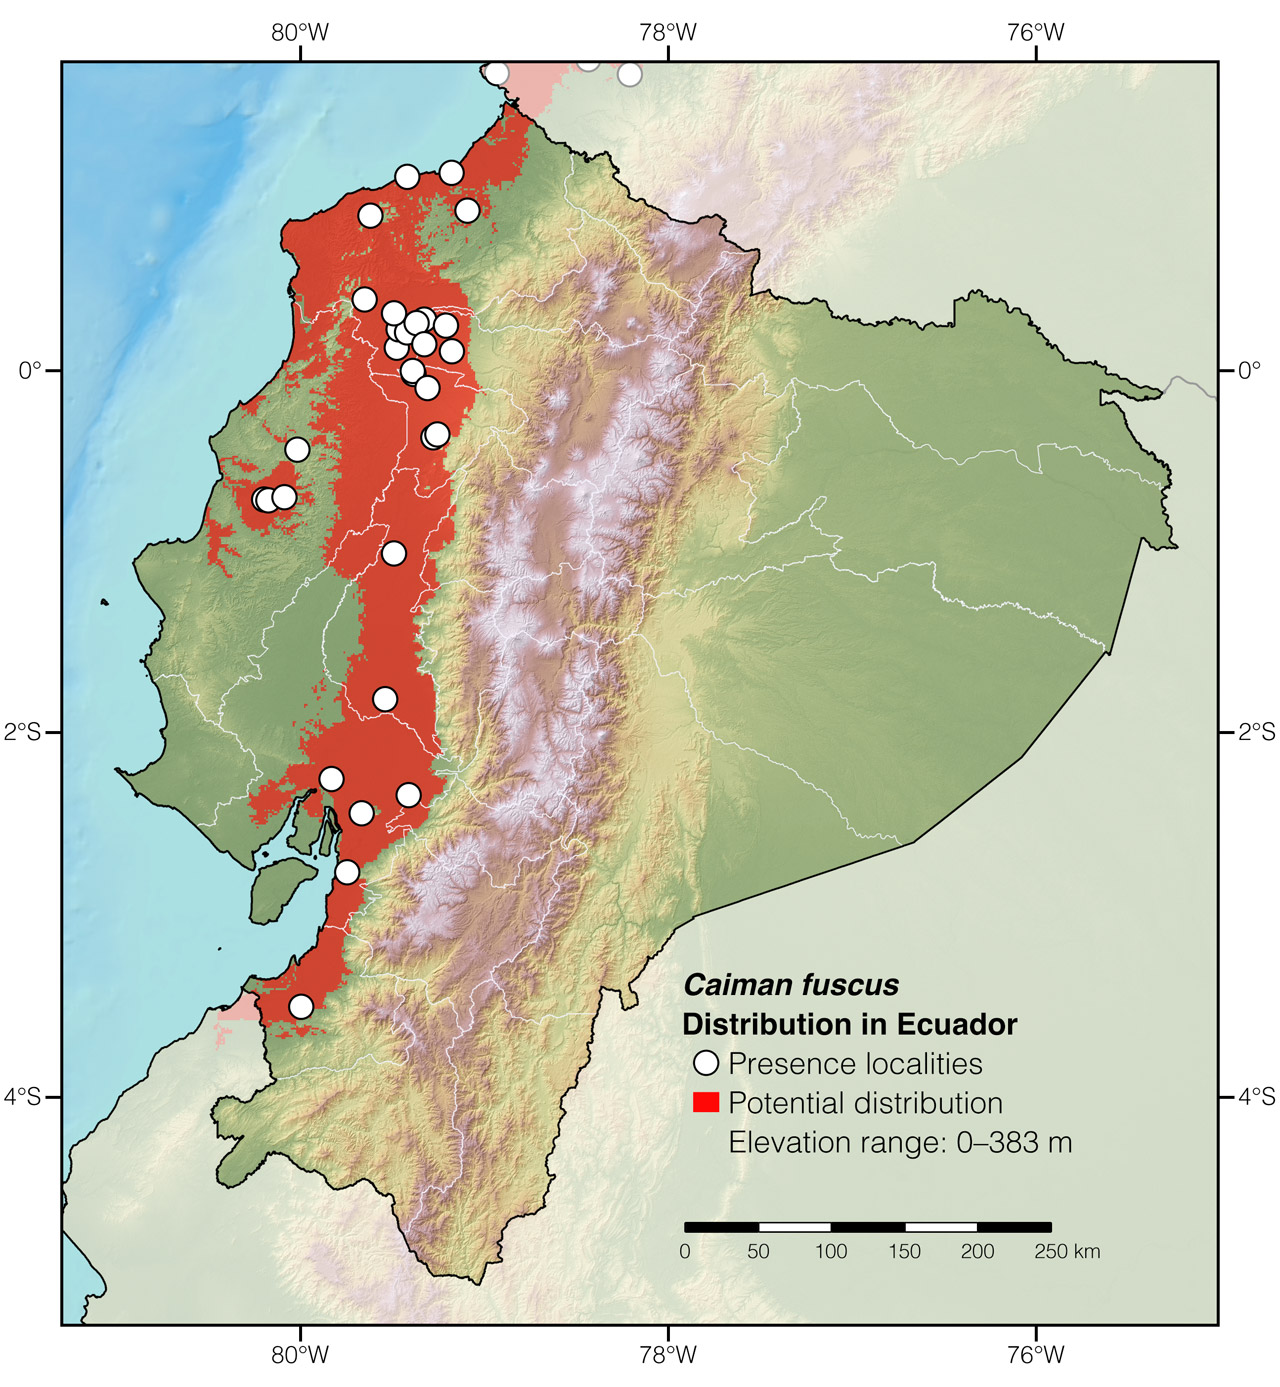 Distribution of Caiman fuscus in Ecuador